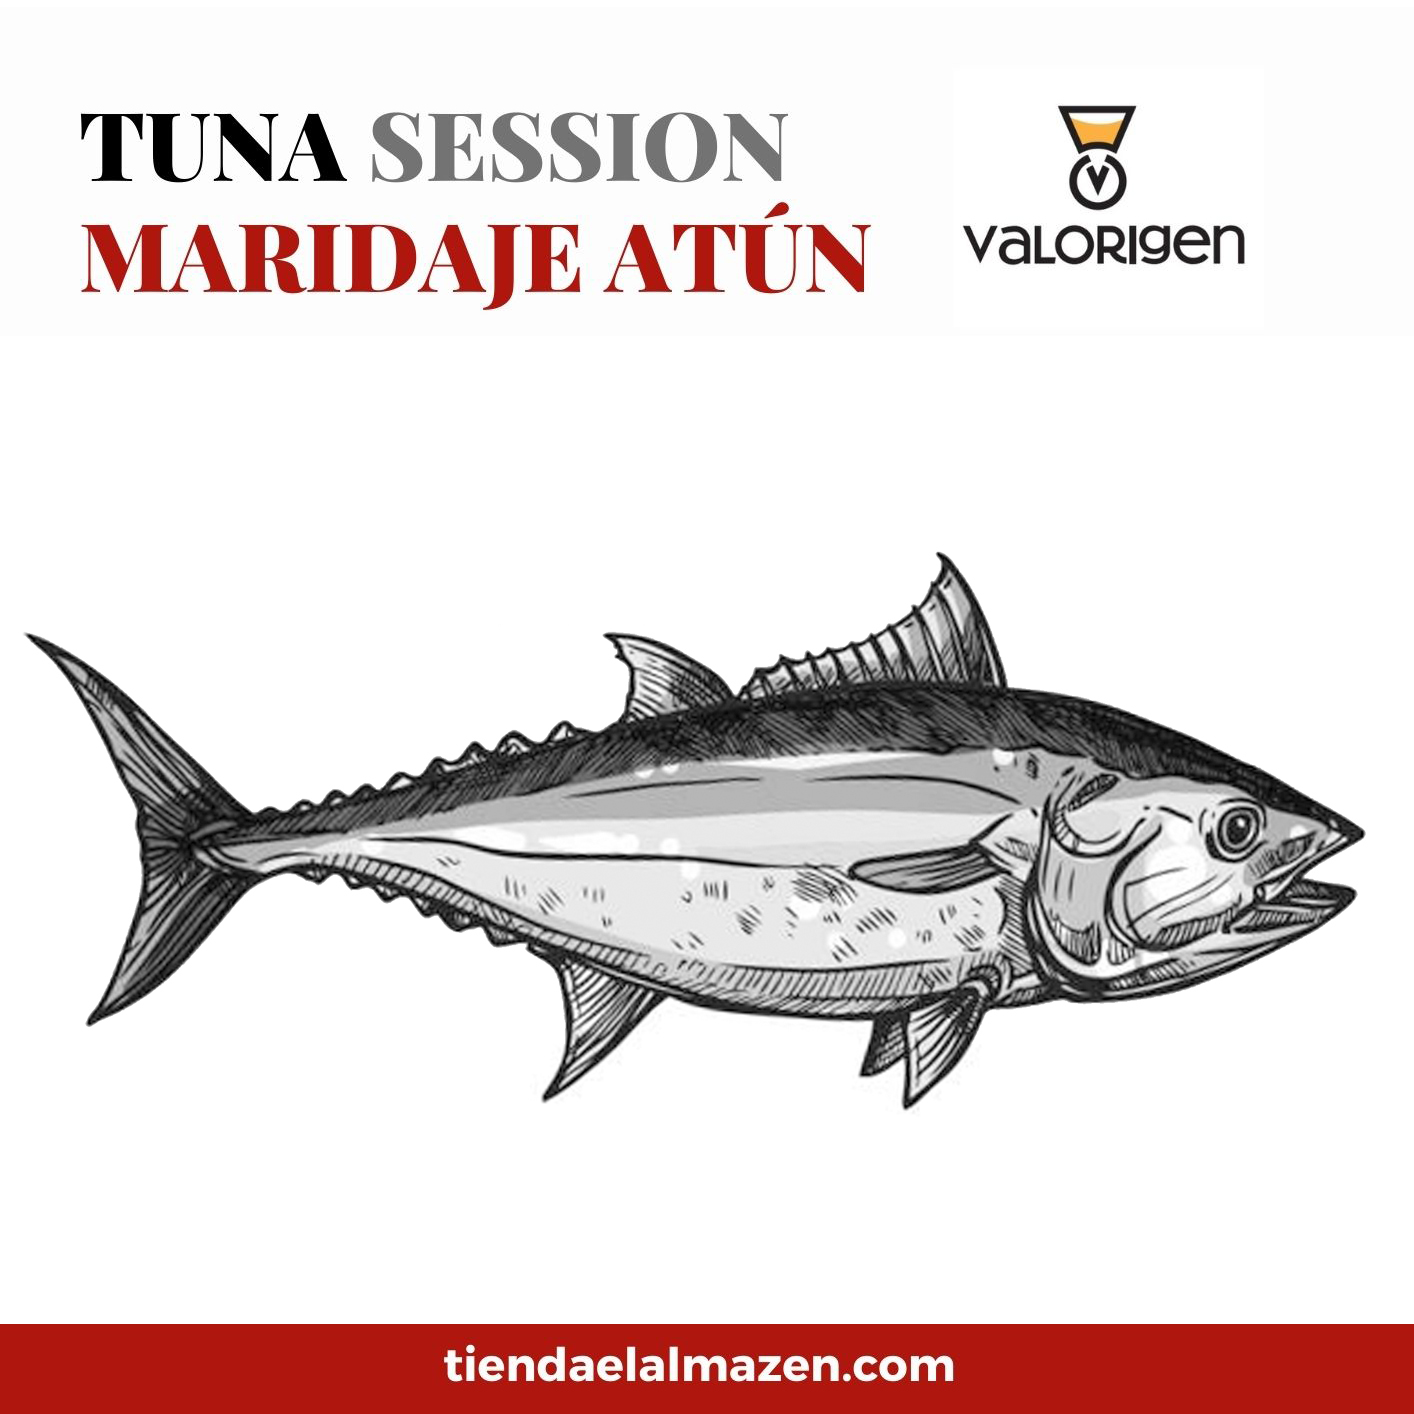 Tuna Session